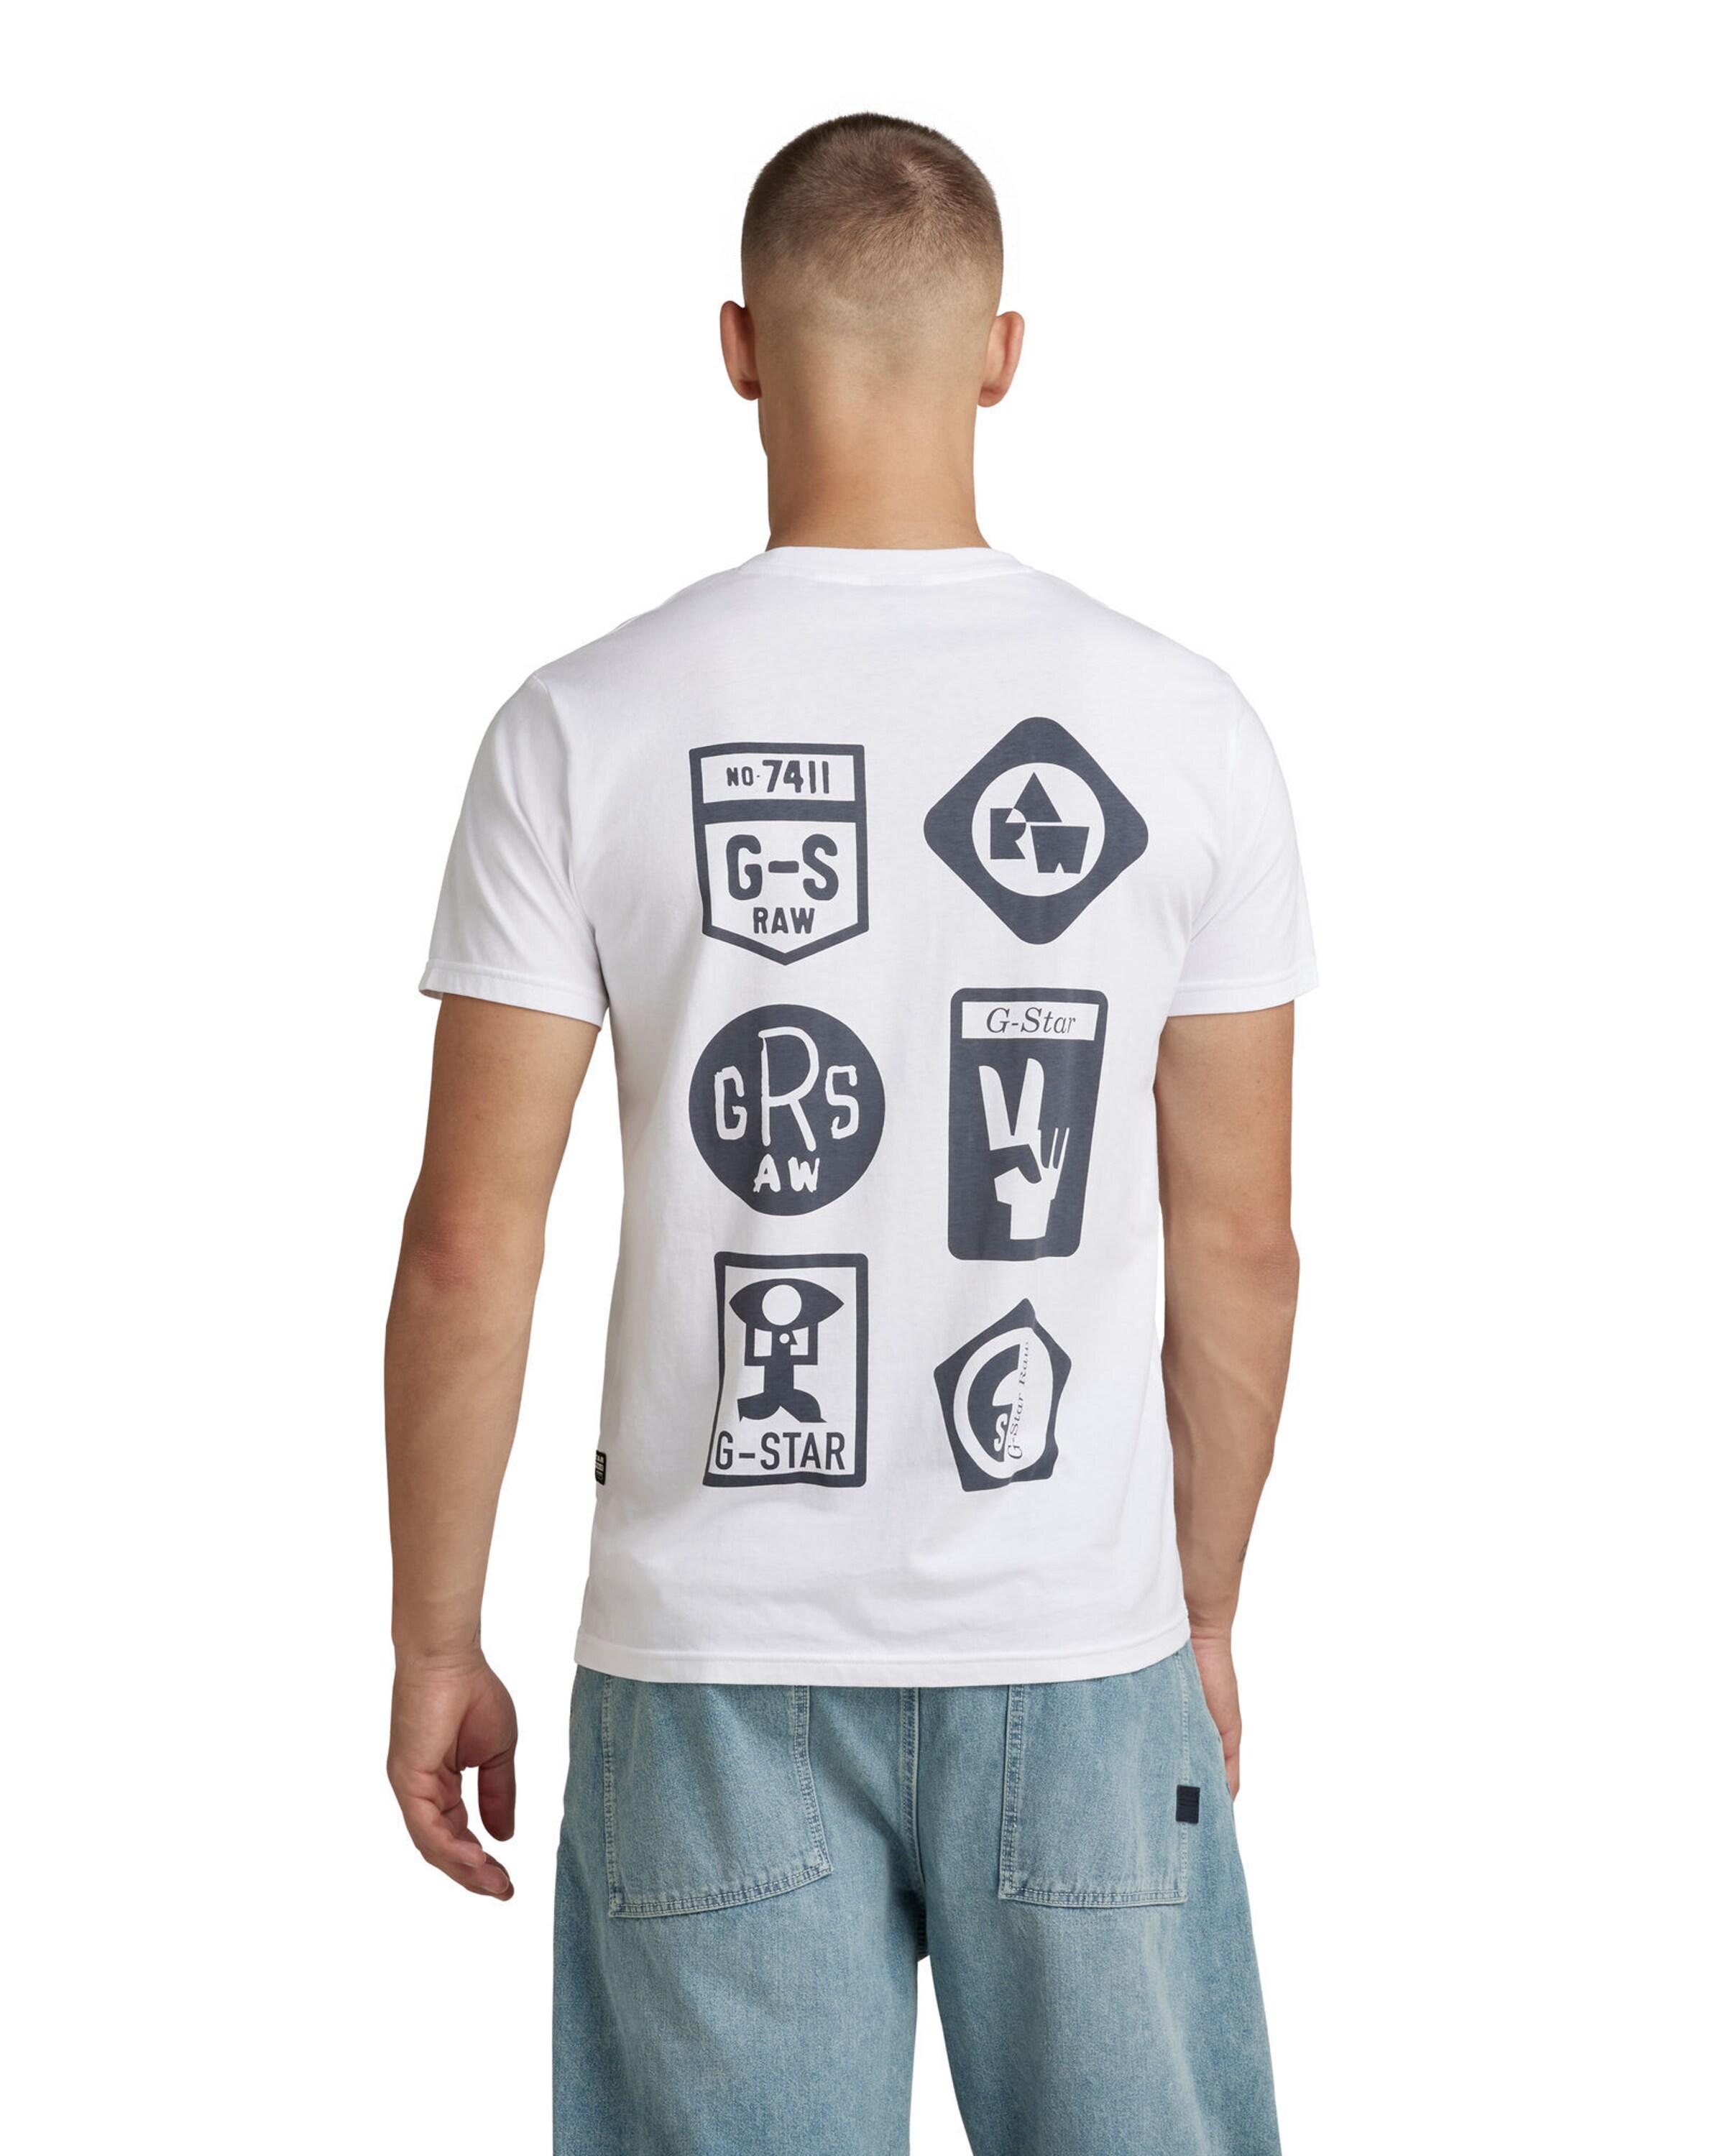 Männer Shirts G-Star RAW Shirt in Weiß - ZM18513